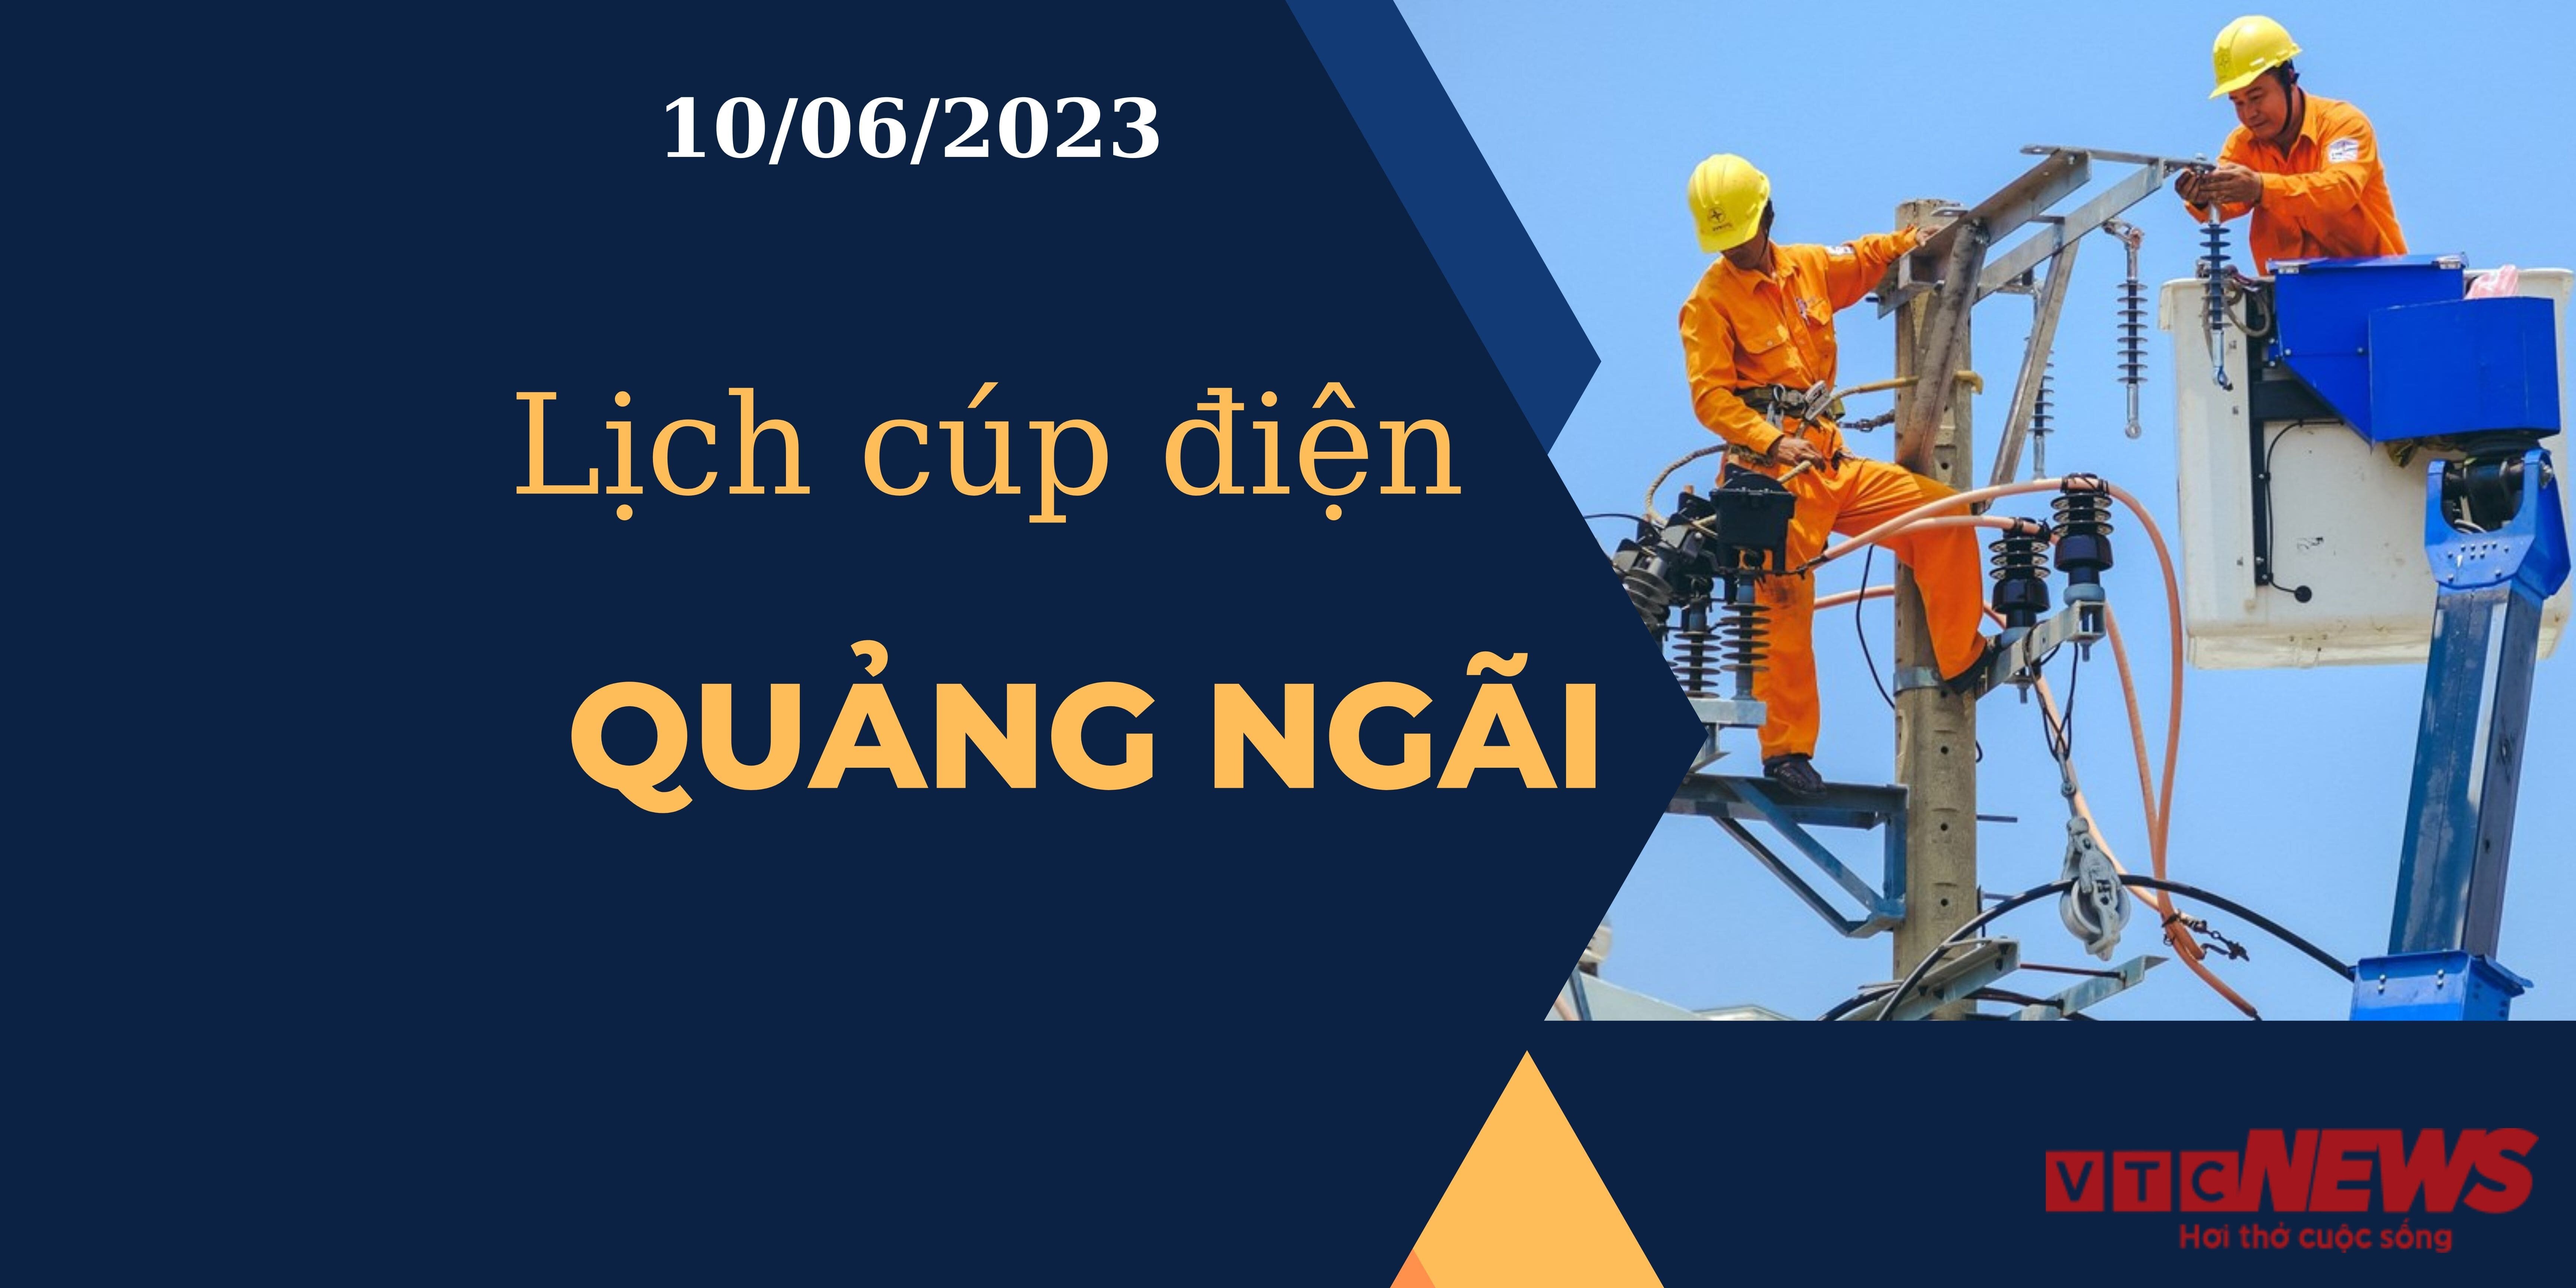 Lịch cúp điện hôm nay tại Quảng Ngãi ngày 10/06/2023 - 1